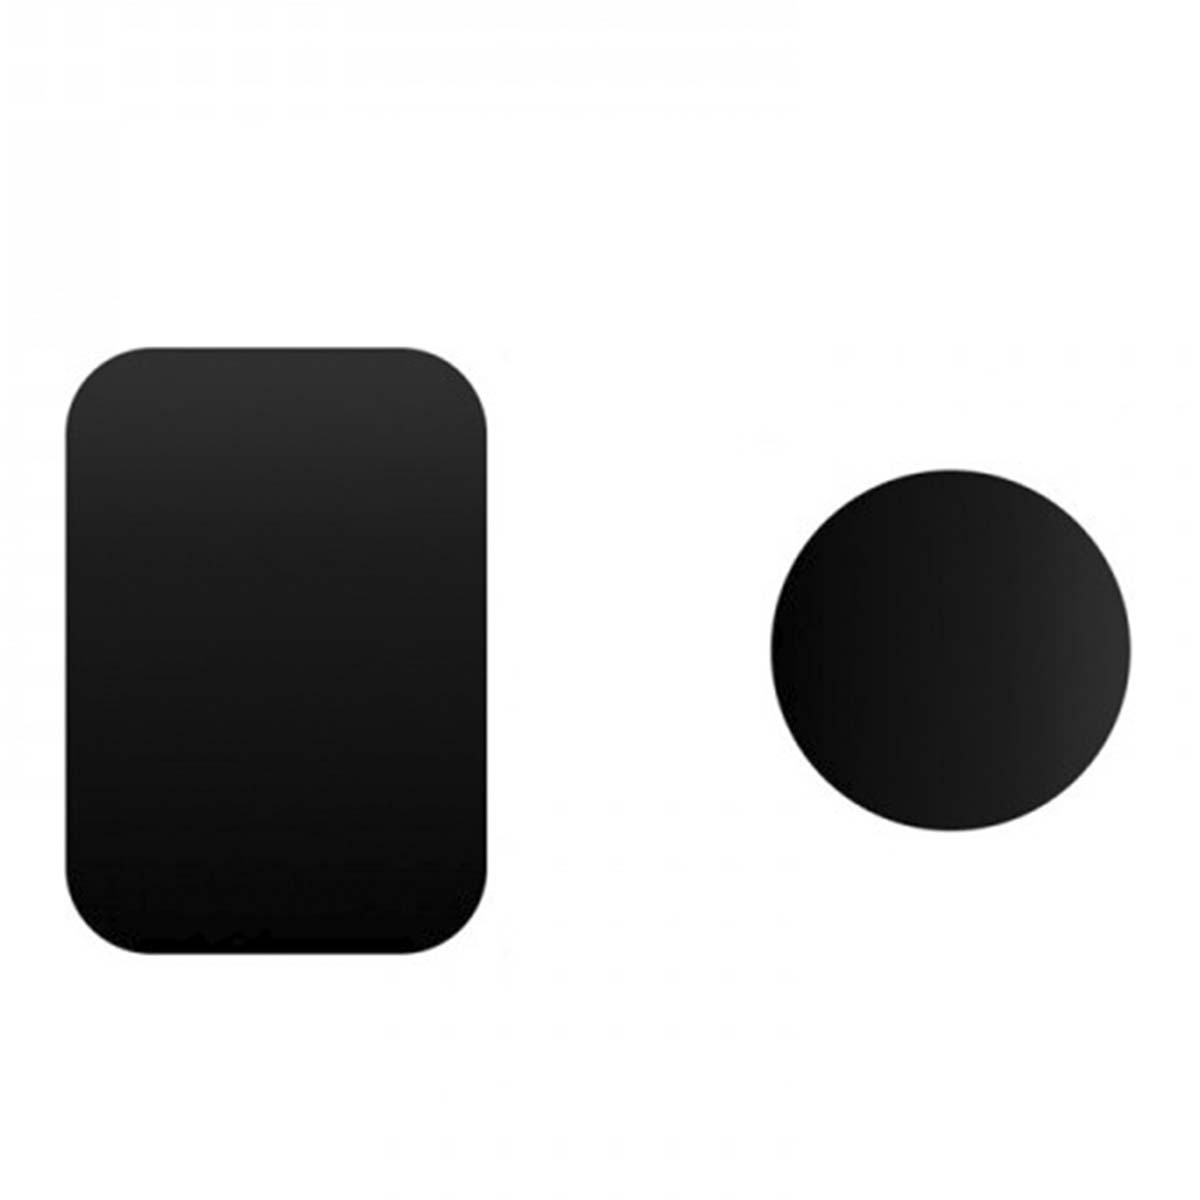 Металлические пластины на клеевой основе для магнитных держателей смартфонов, цвет черный